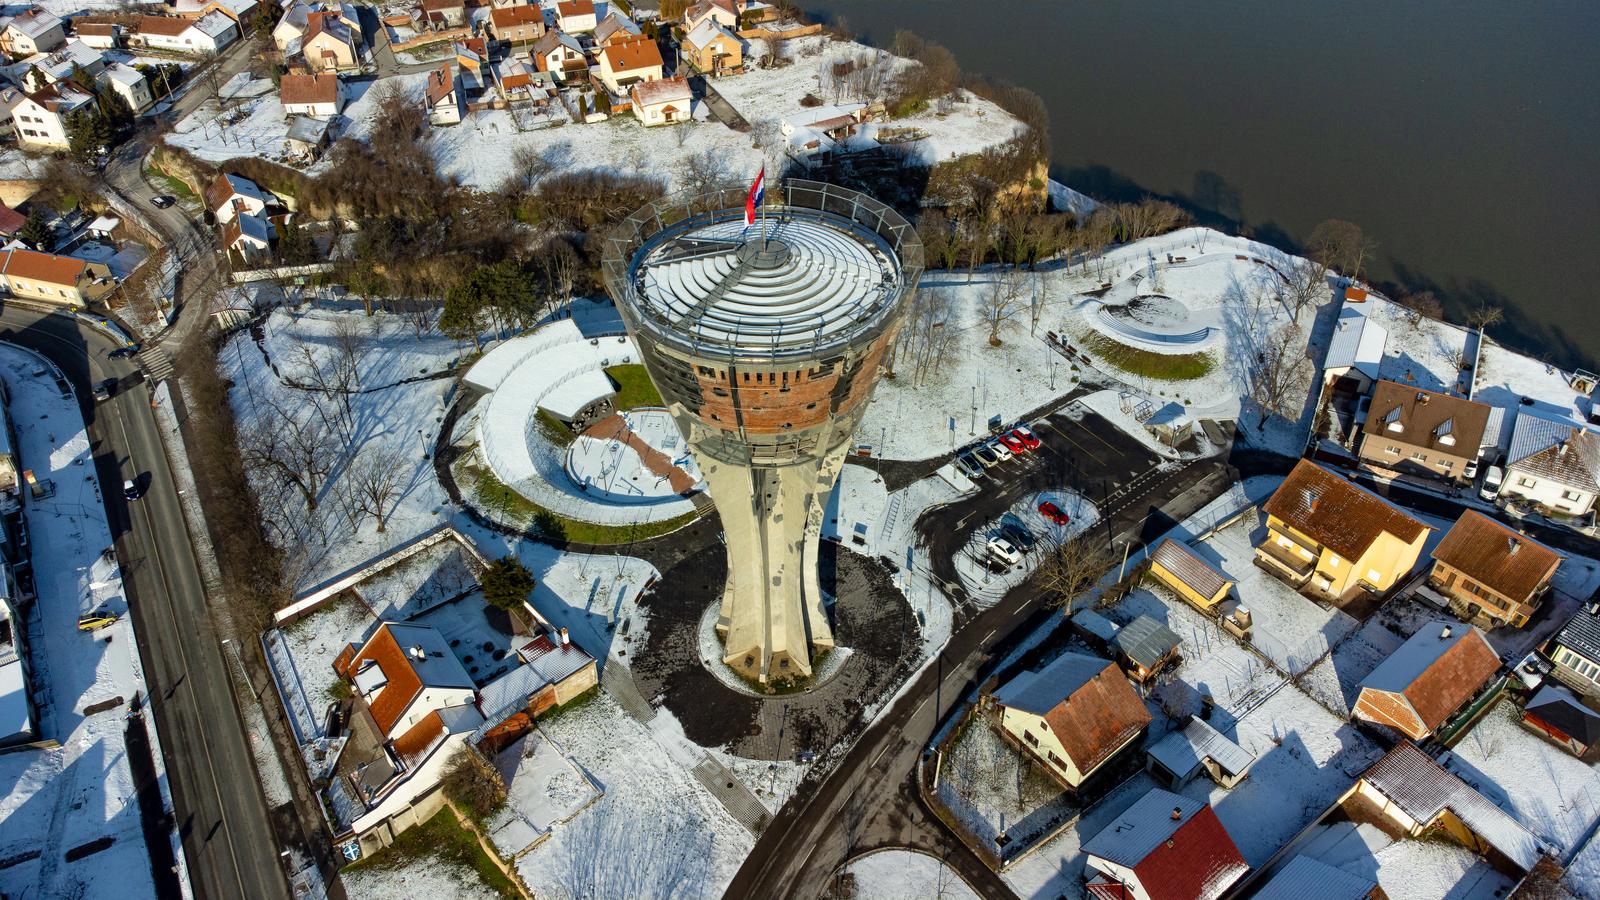 12.01.2022., Vukovar - Snijeg zabijelio ulice i krovove grada Vukovara.   Photo: Davor Javorovic/PIXSELL